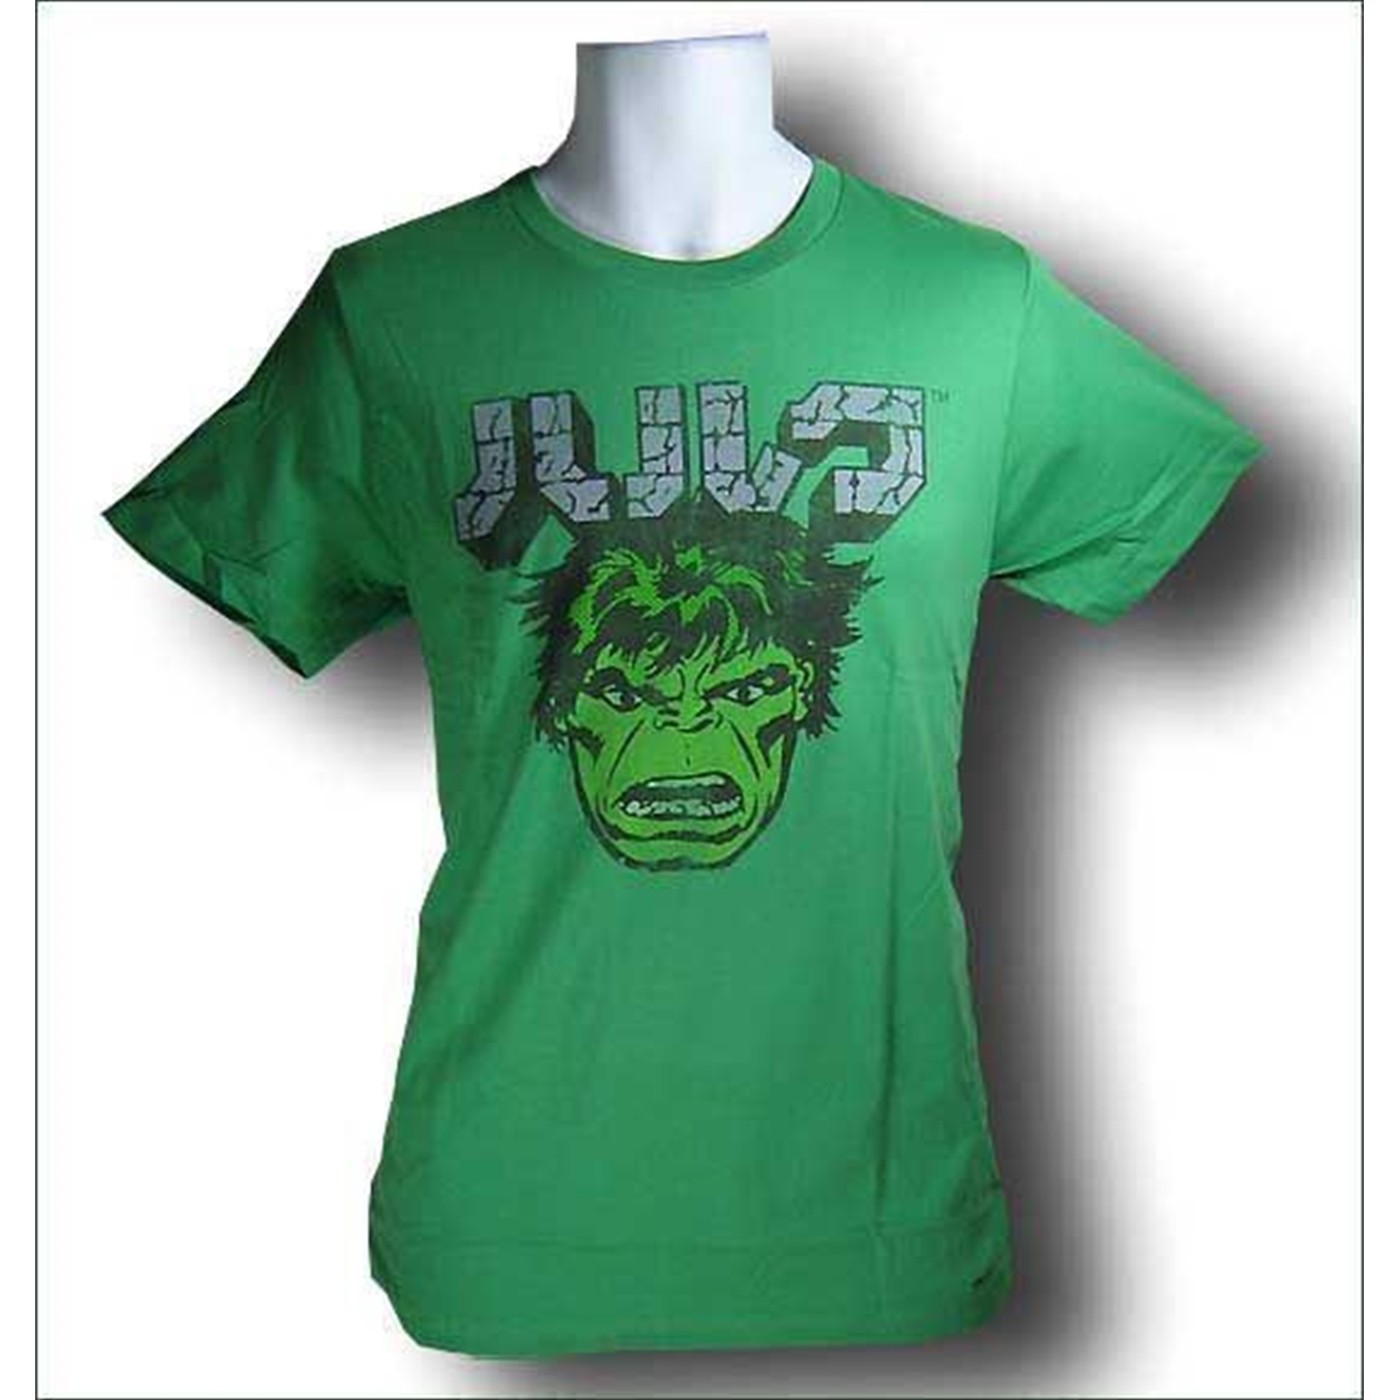 Hulk This Means Hulk in Japanese T-Shirt